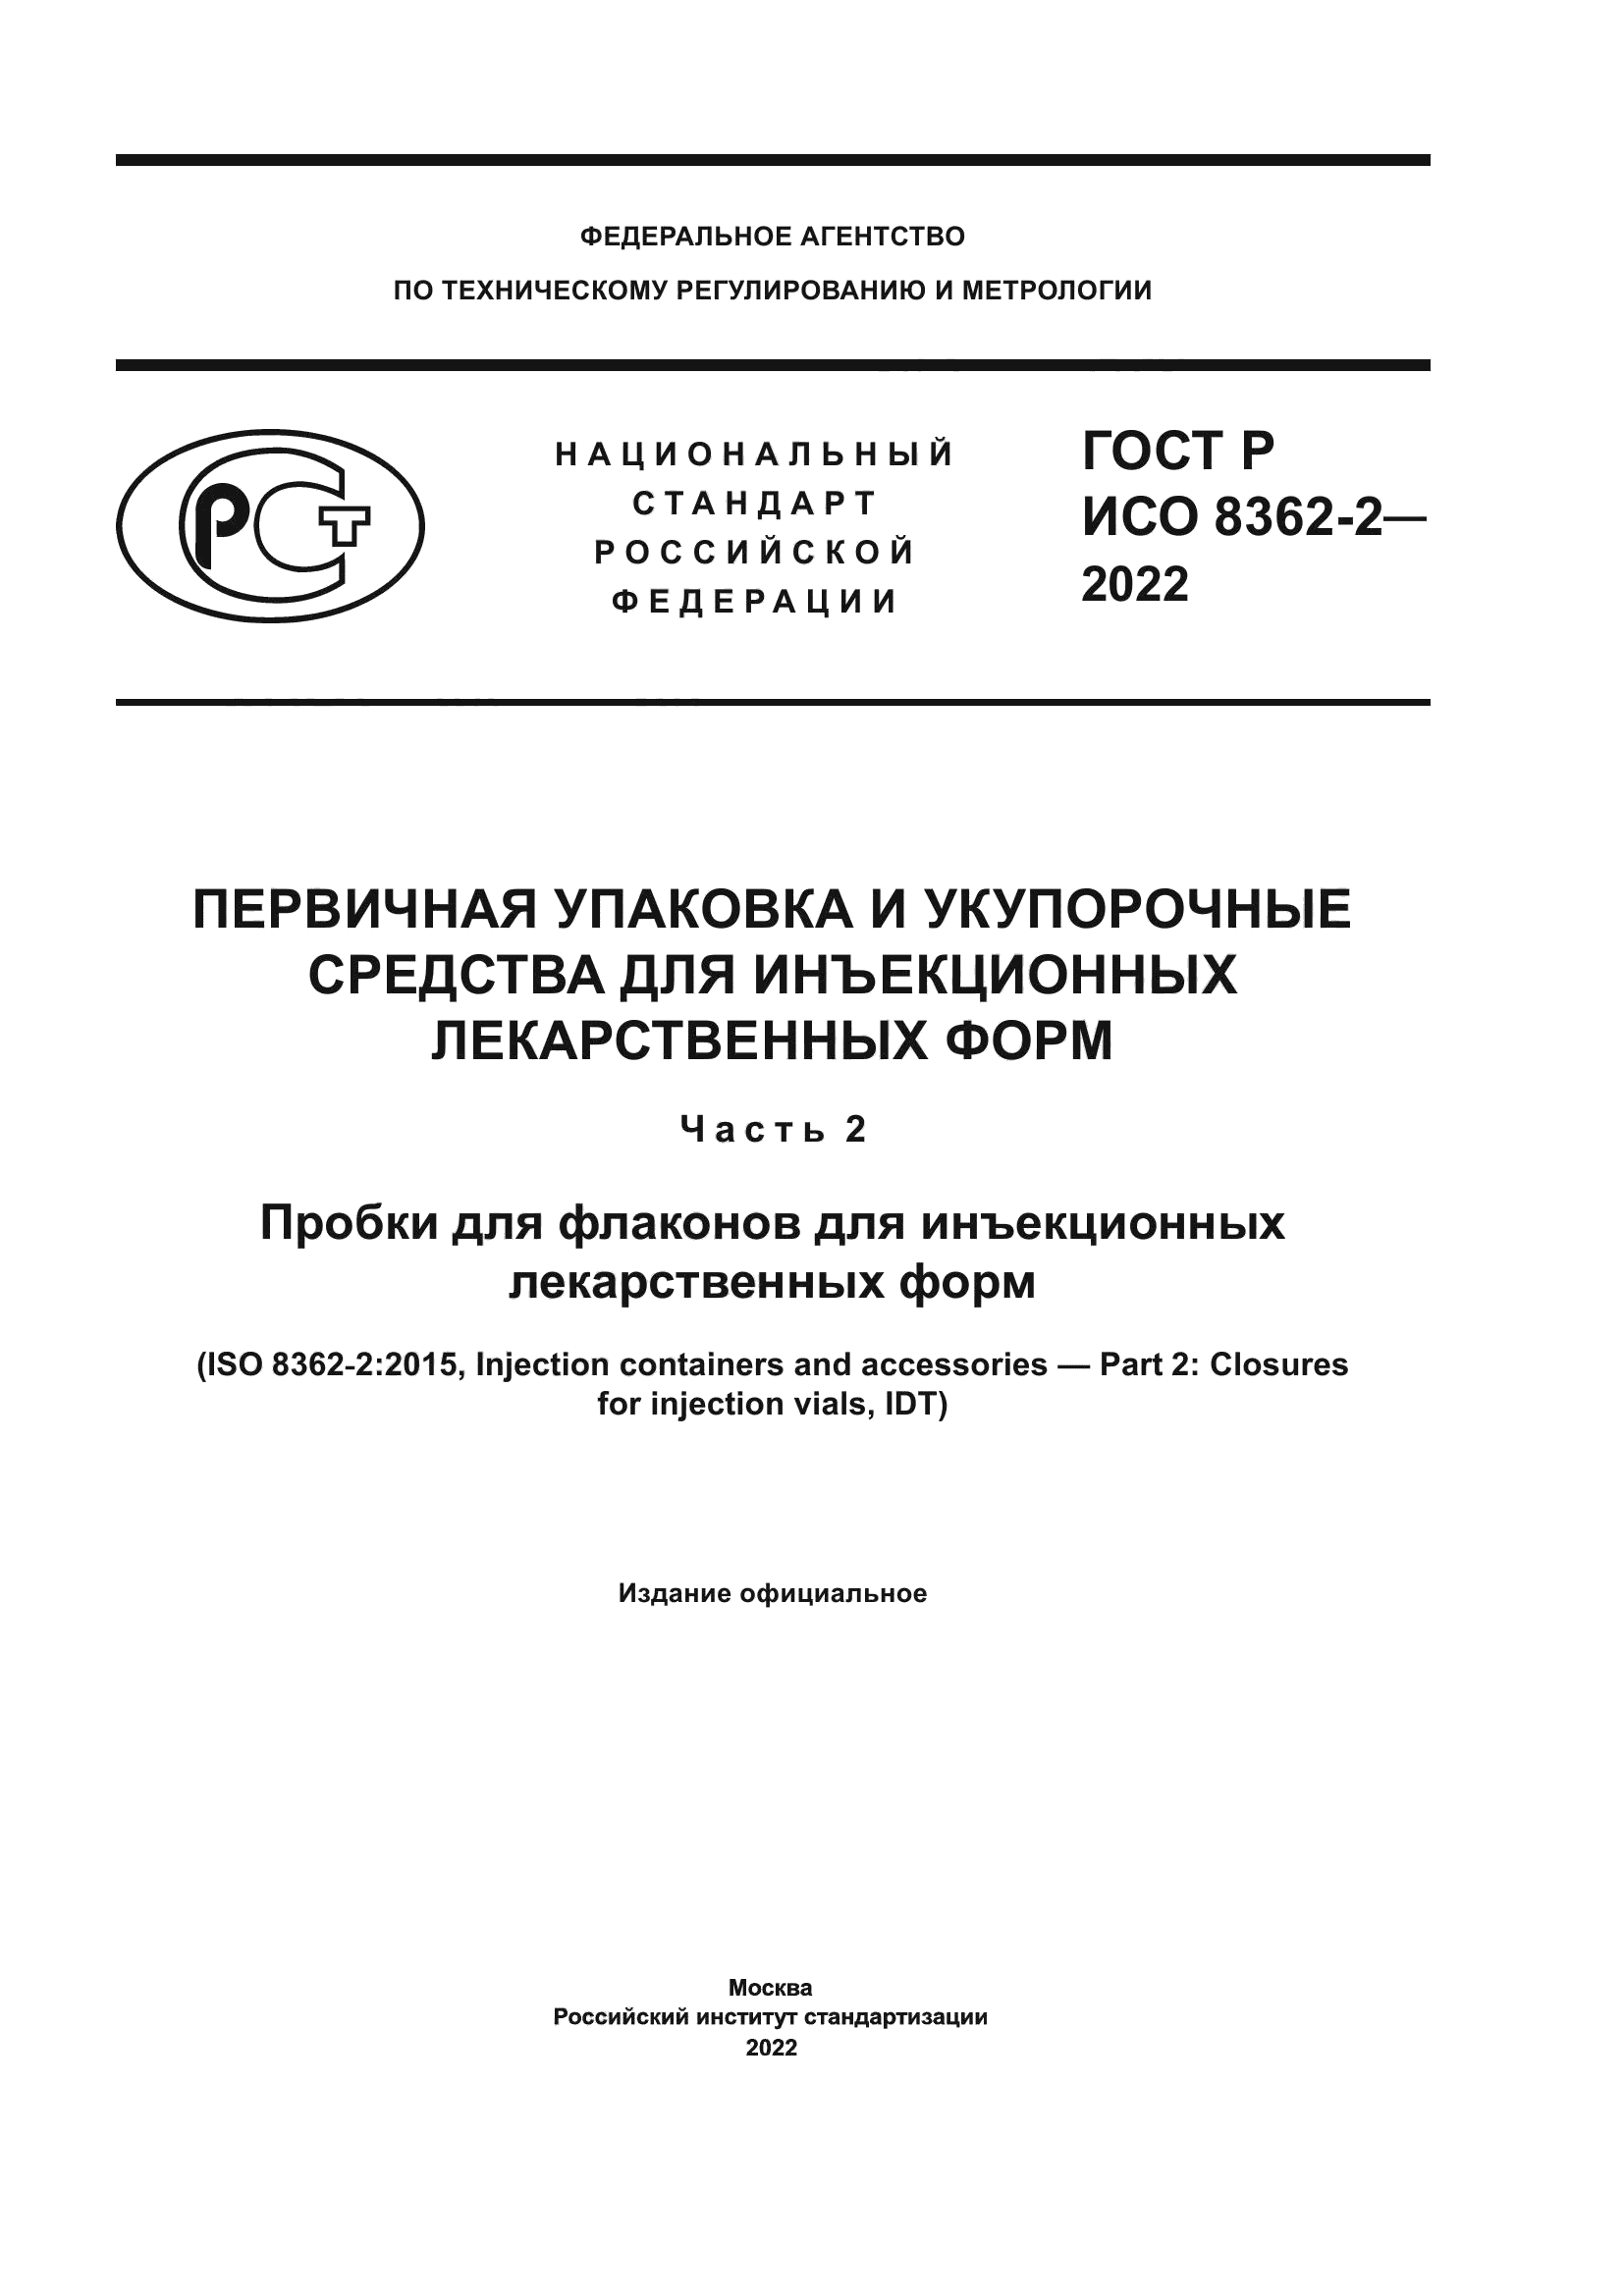 ГОСТ Р ИСО 8362-2-2022